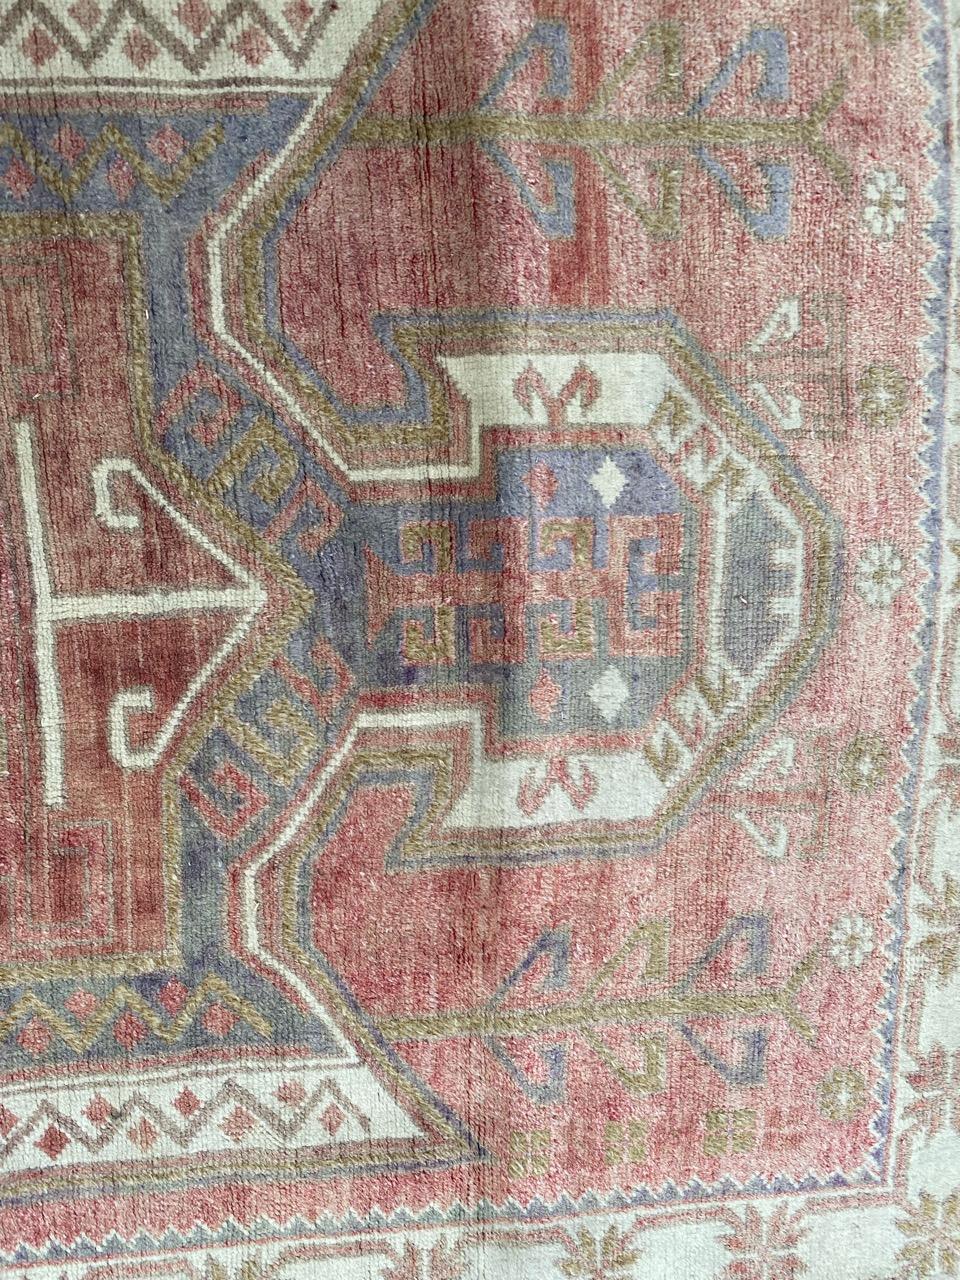 Schöner türkischer anatolischer Teppich aus dem späten 20. Jahrhundert, mit schönem geometrischem Muster und schönen Farben, komplett handgeknüpft mit Wollsamt auf Wollfond.

✨✨✨
